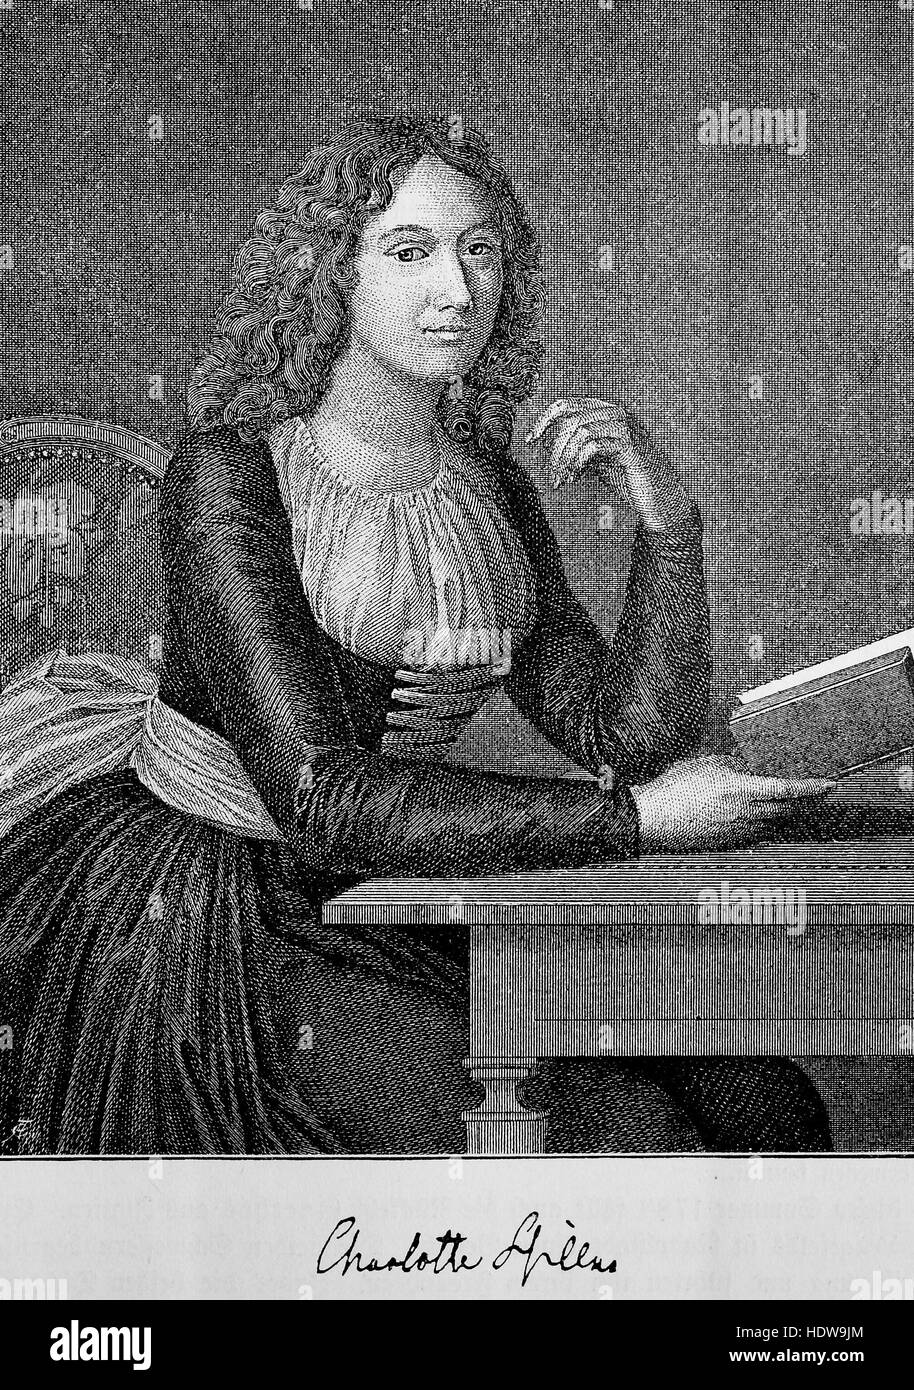 Charlotte Luise Antoinette von Schiller, nacido Charlotte von Lengefeld, 1766-1826, la esposa del poeta alemán Friedrich Schiller, xilografía desde el año 1880 Foto de stock